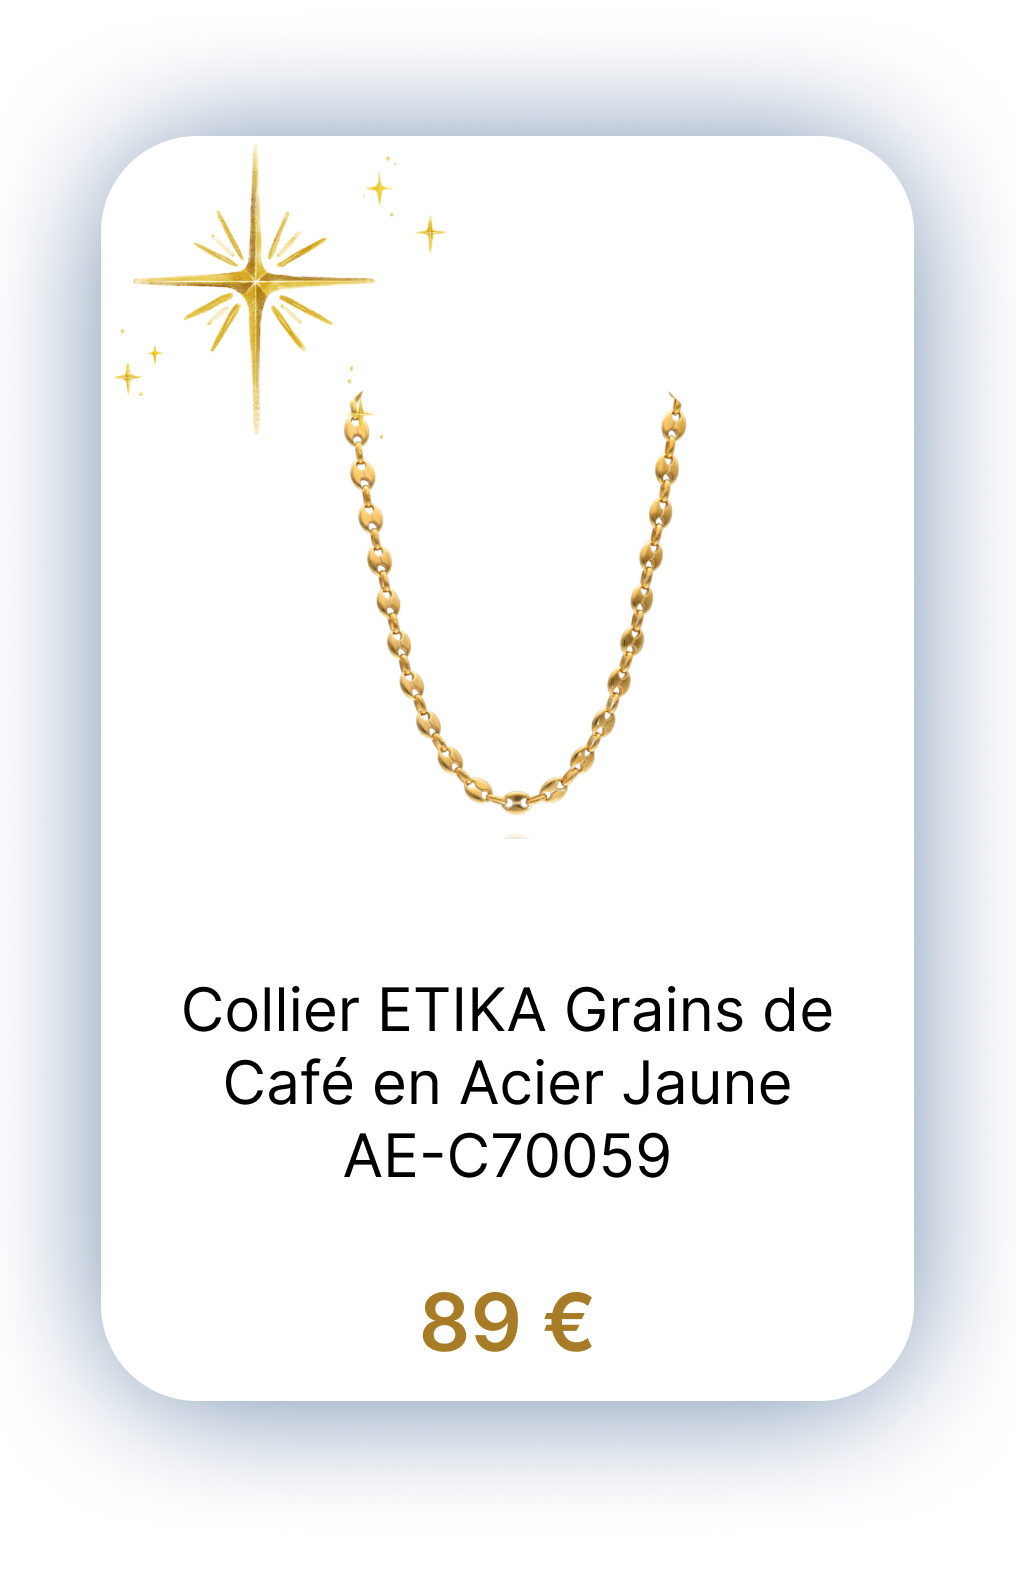 Collier ETIKA Grains de Café en Acier Jaune - AE-C70059.png